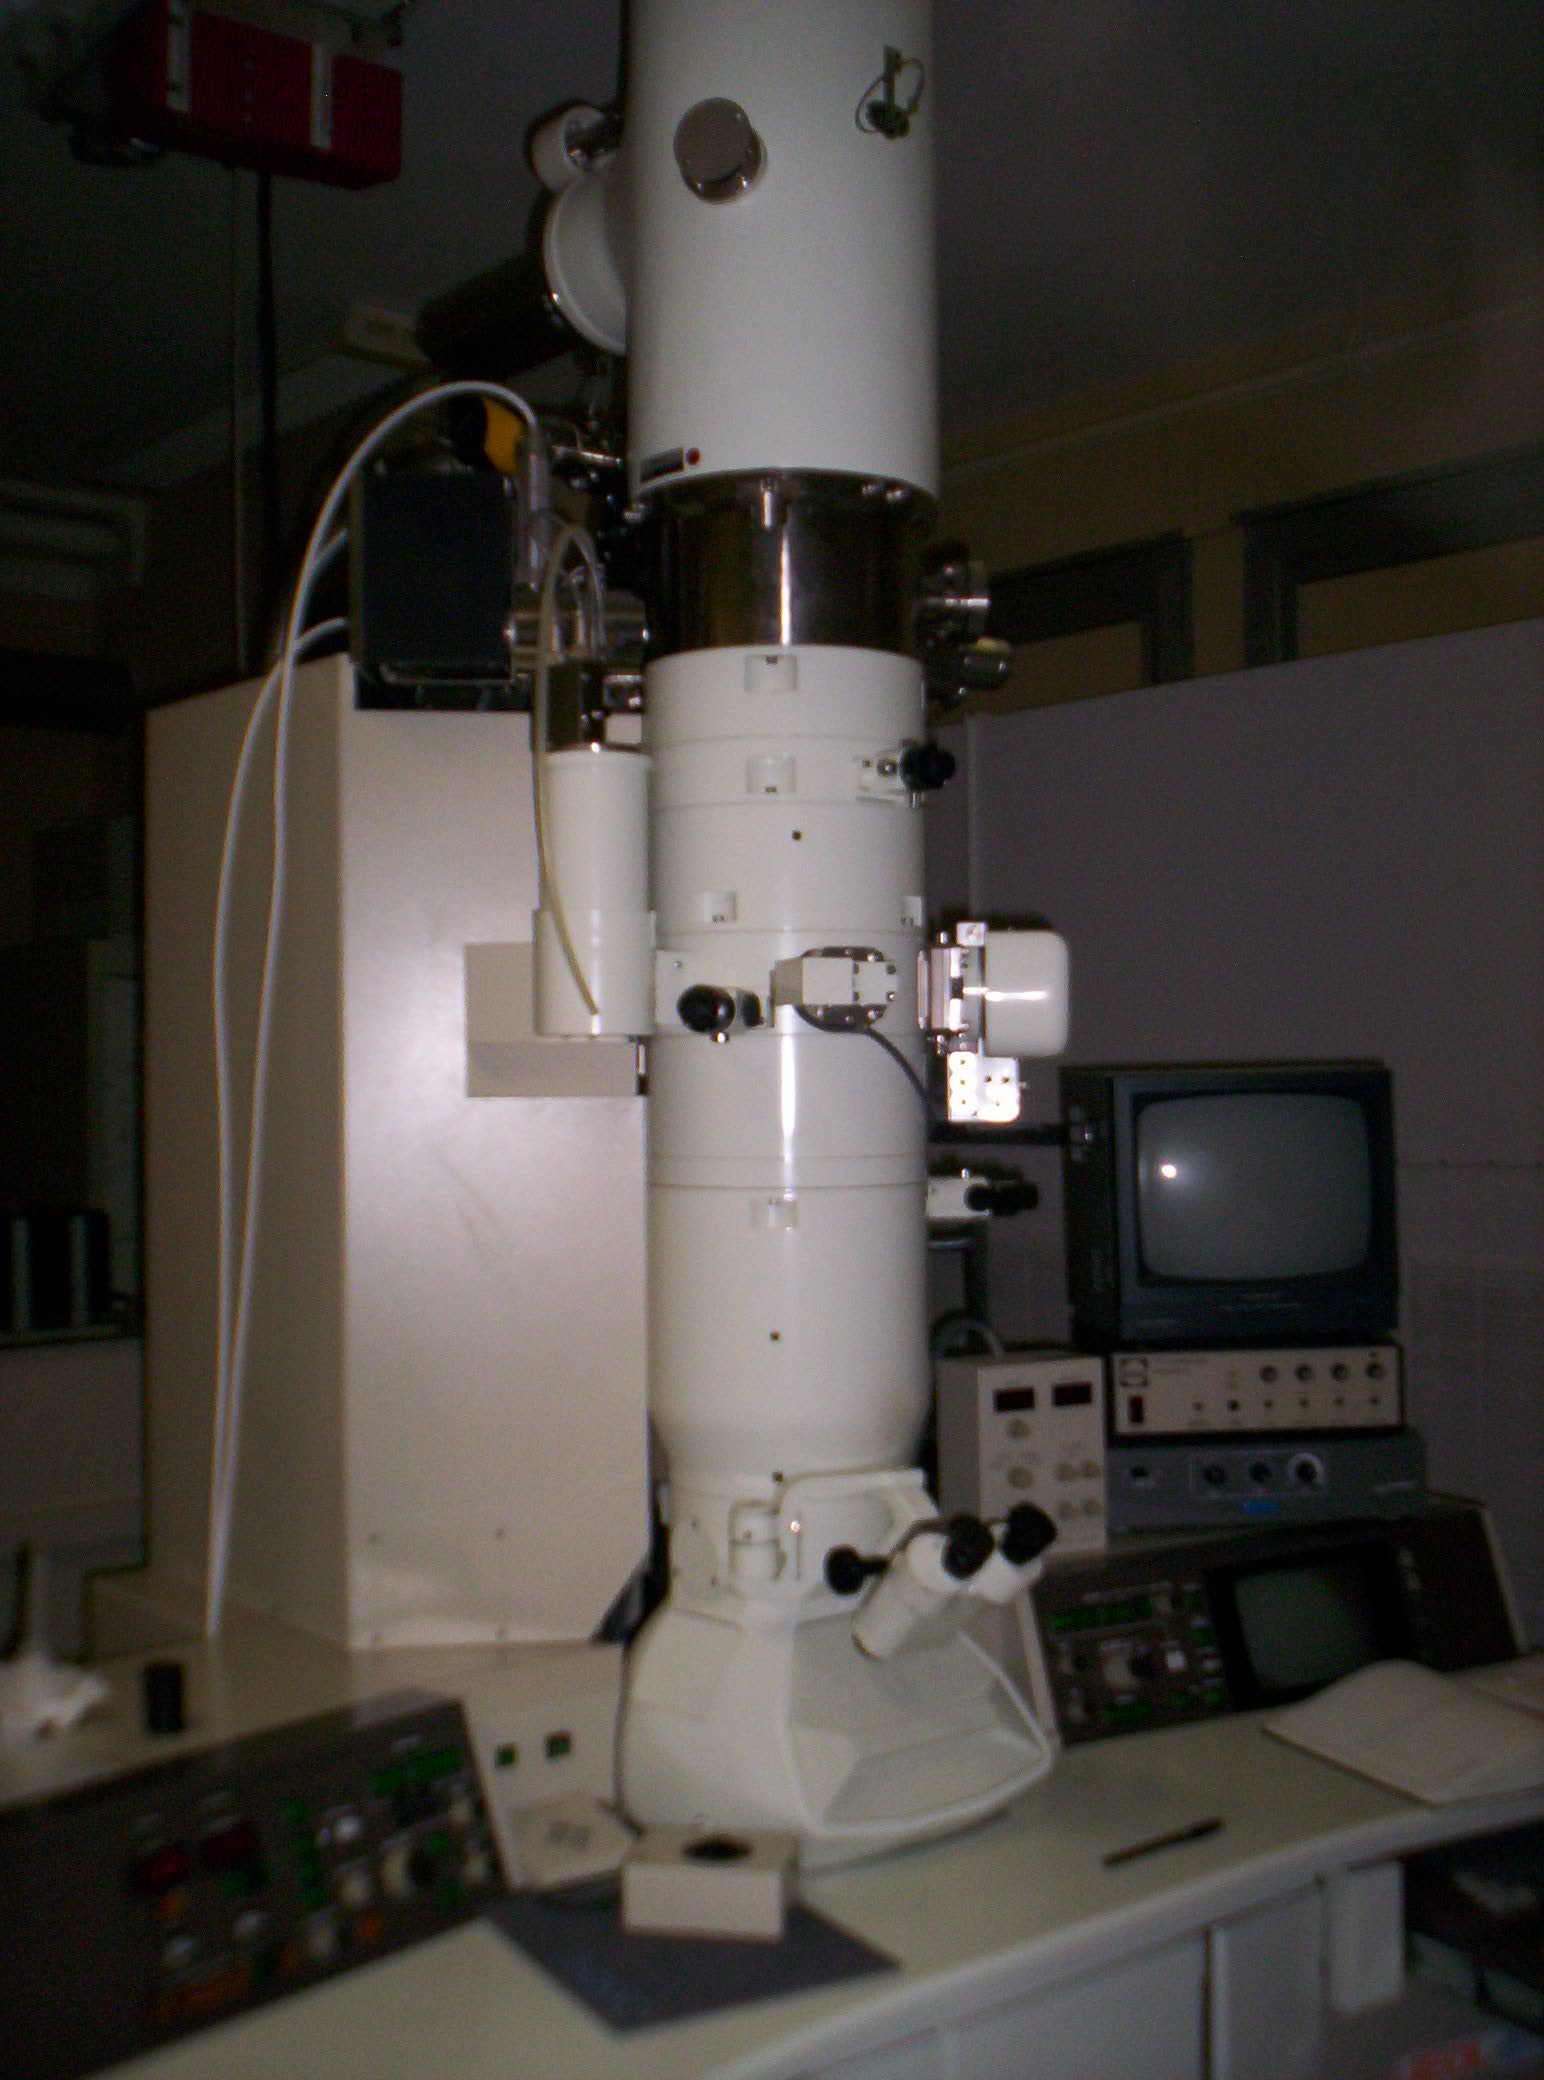 II - La microscopie électronique en transmission